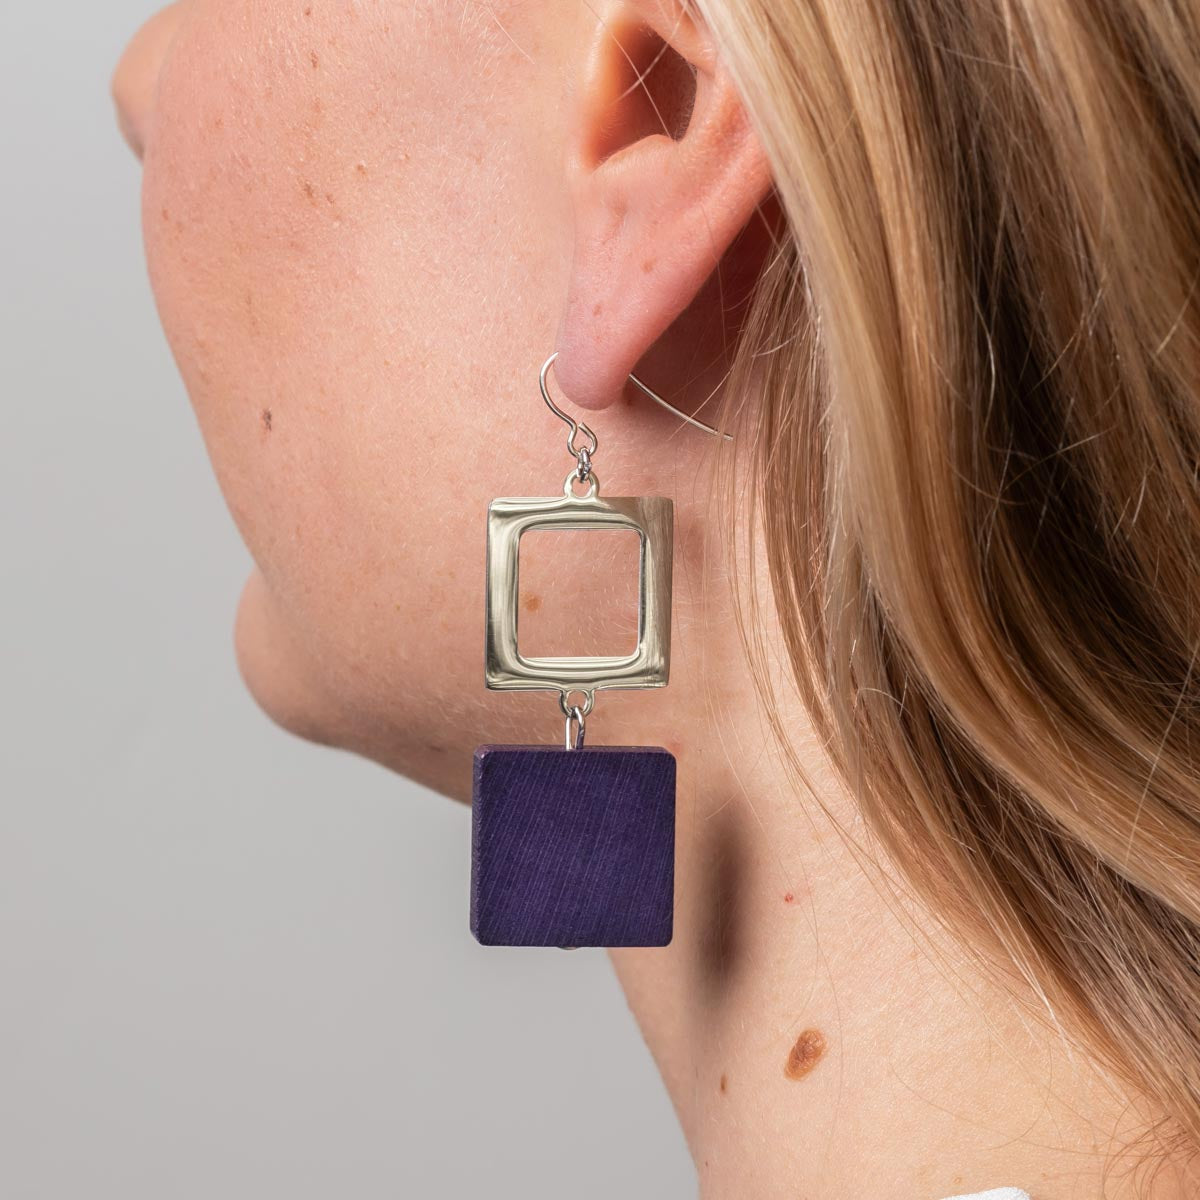 Adele earrings, purple